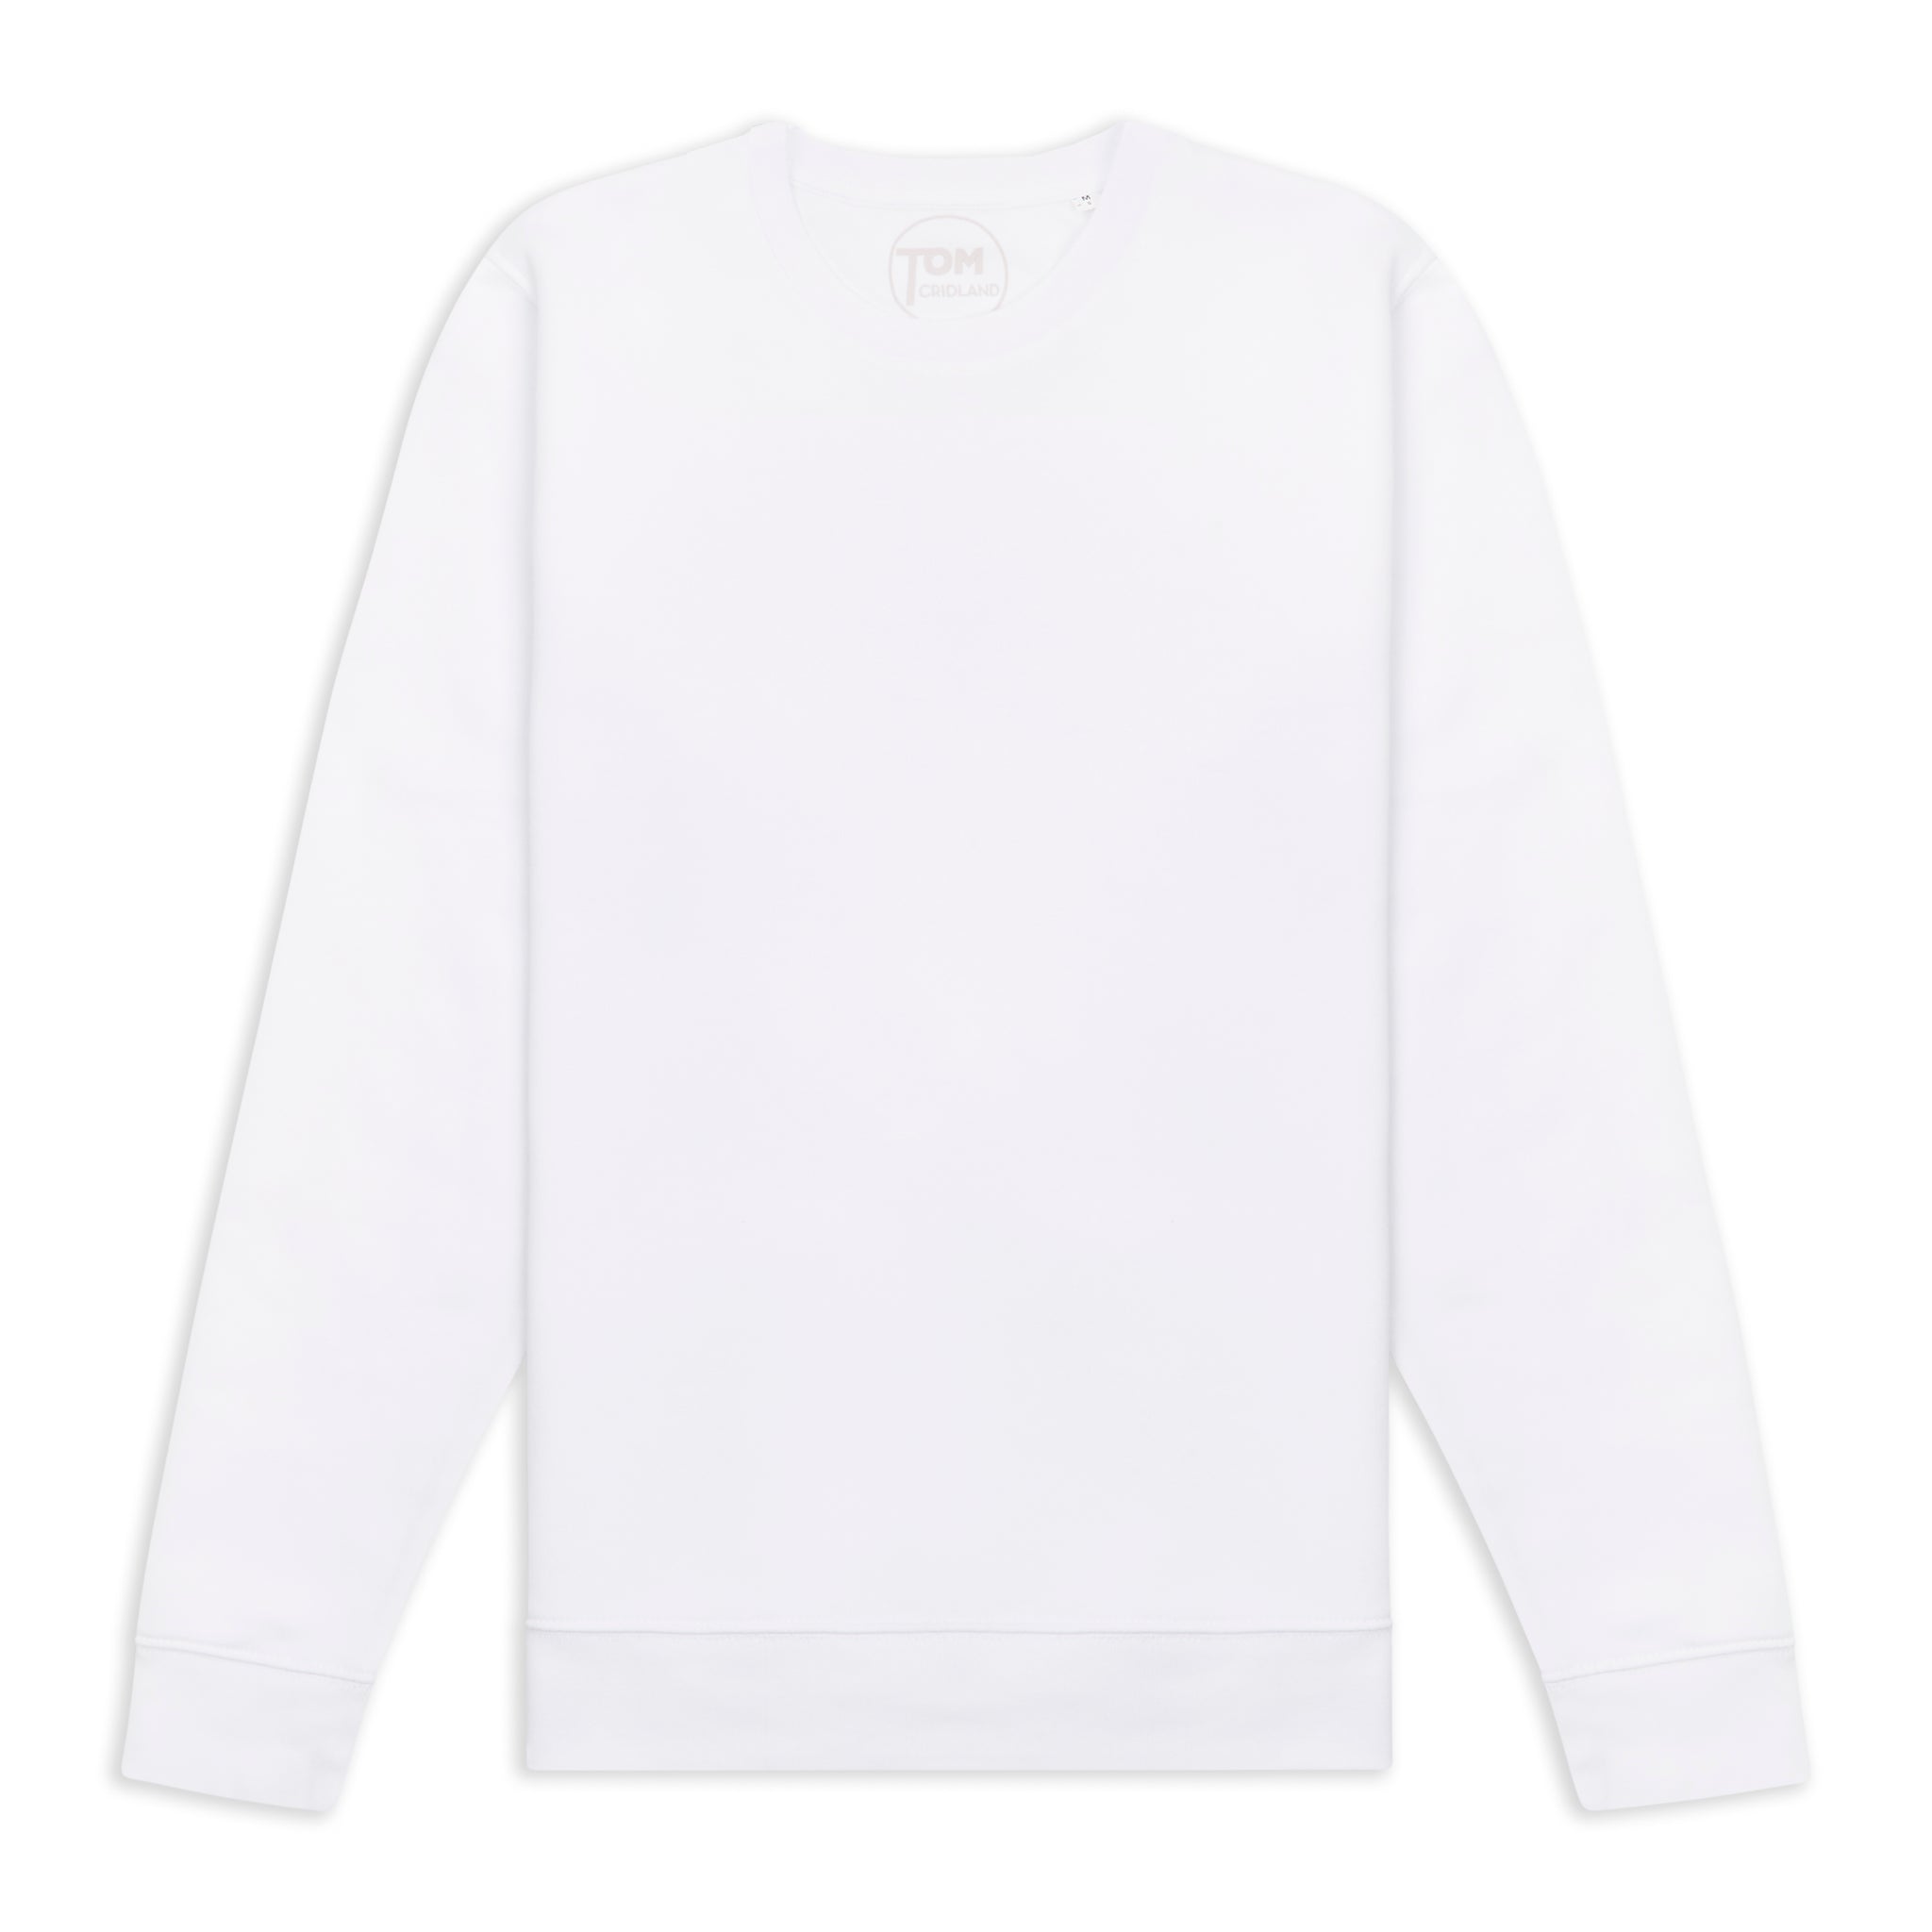 Dove White 30 Year™ Sweatshirt